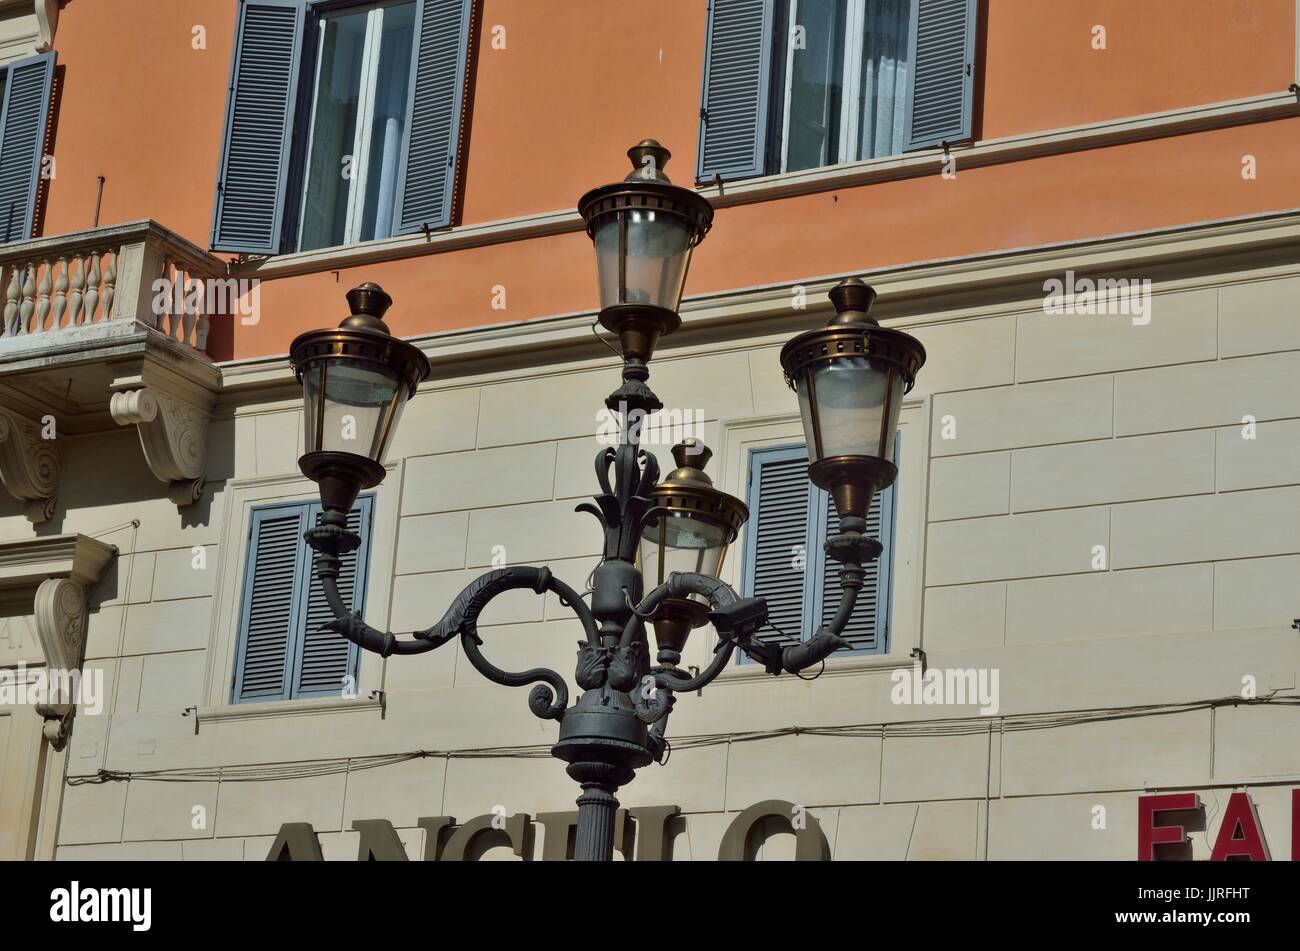 Une belle lampe poster ayant 4 lampes contre la toile de fond d'un immeuble, Rome, Italie, Europe Banque D'Images